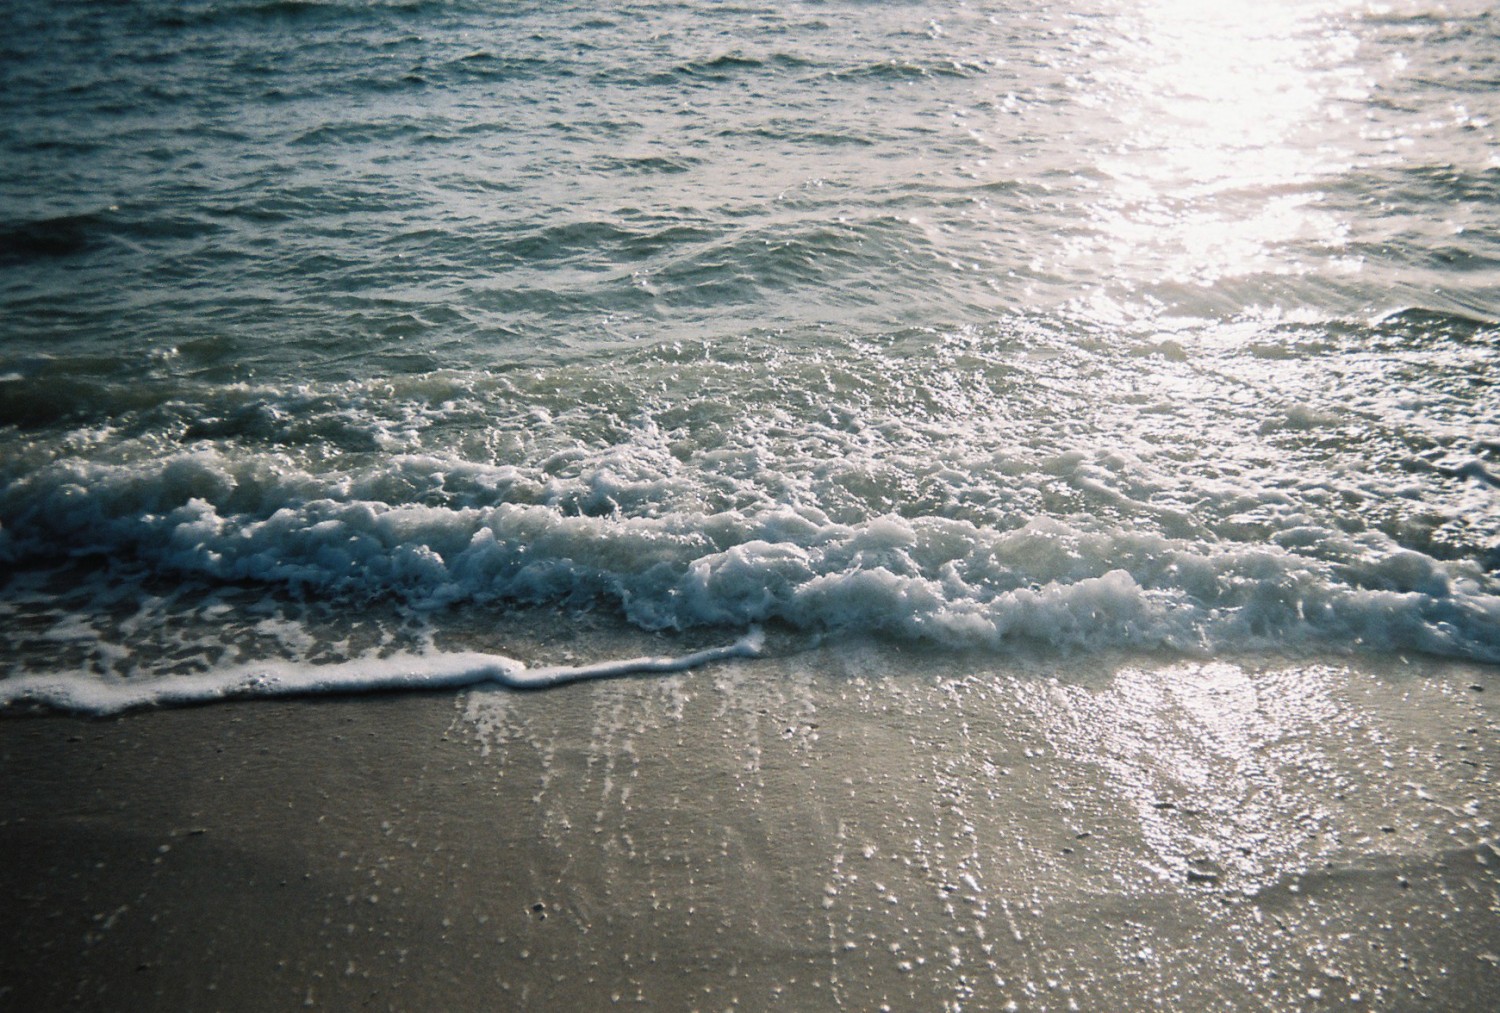 「寄っては返す波の音」 豊崎美らSUNビーチ